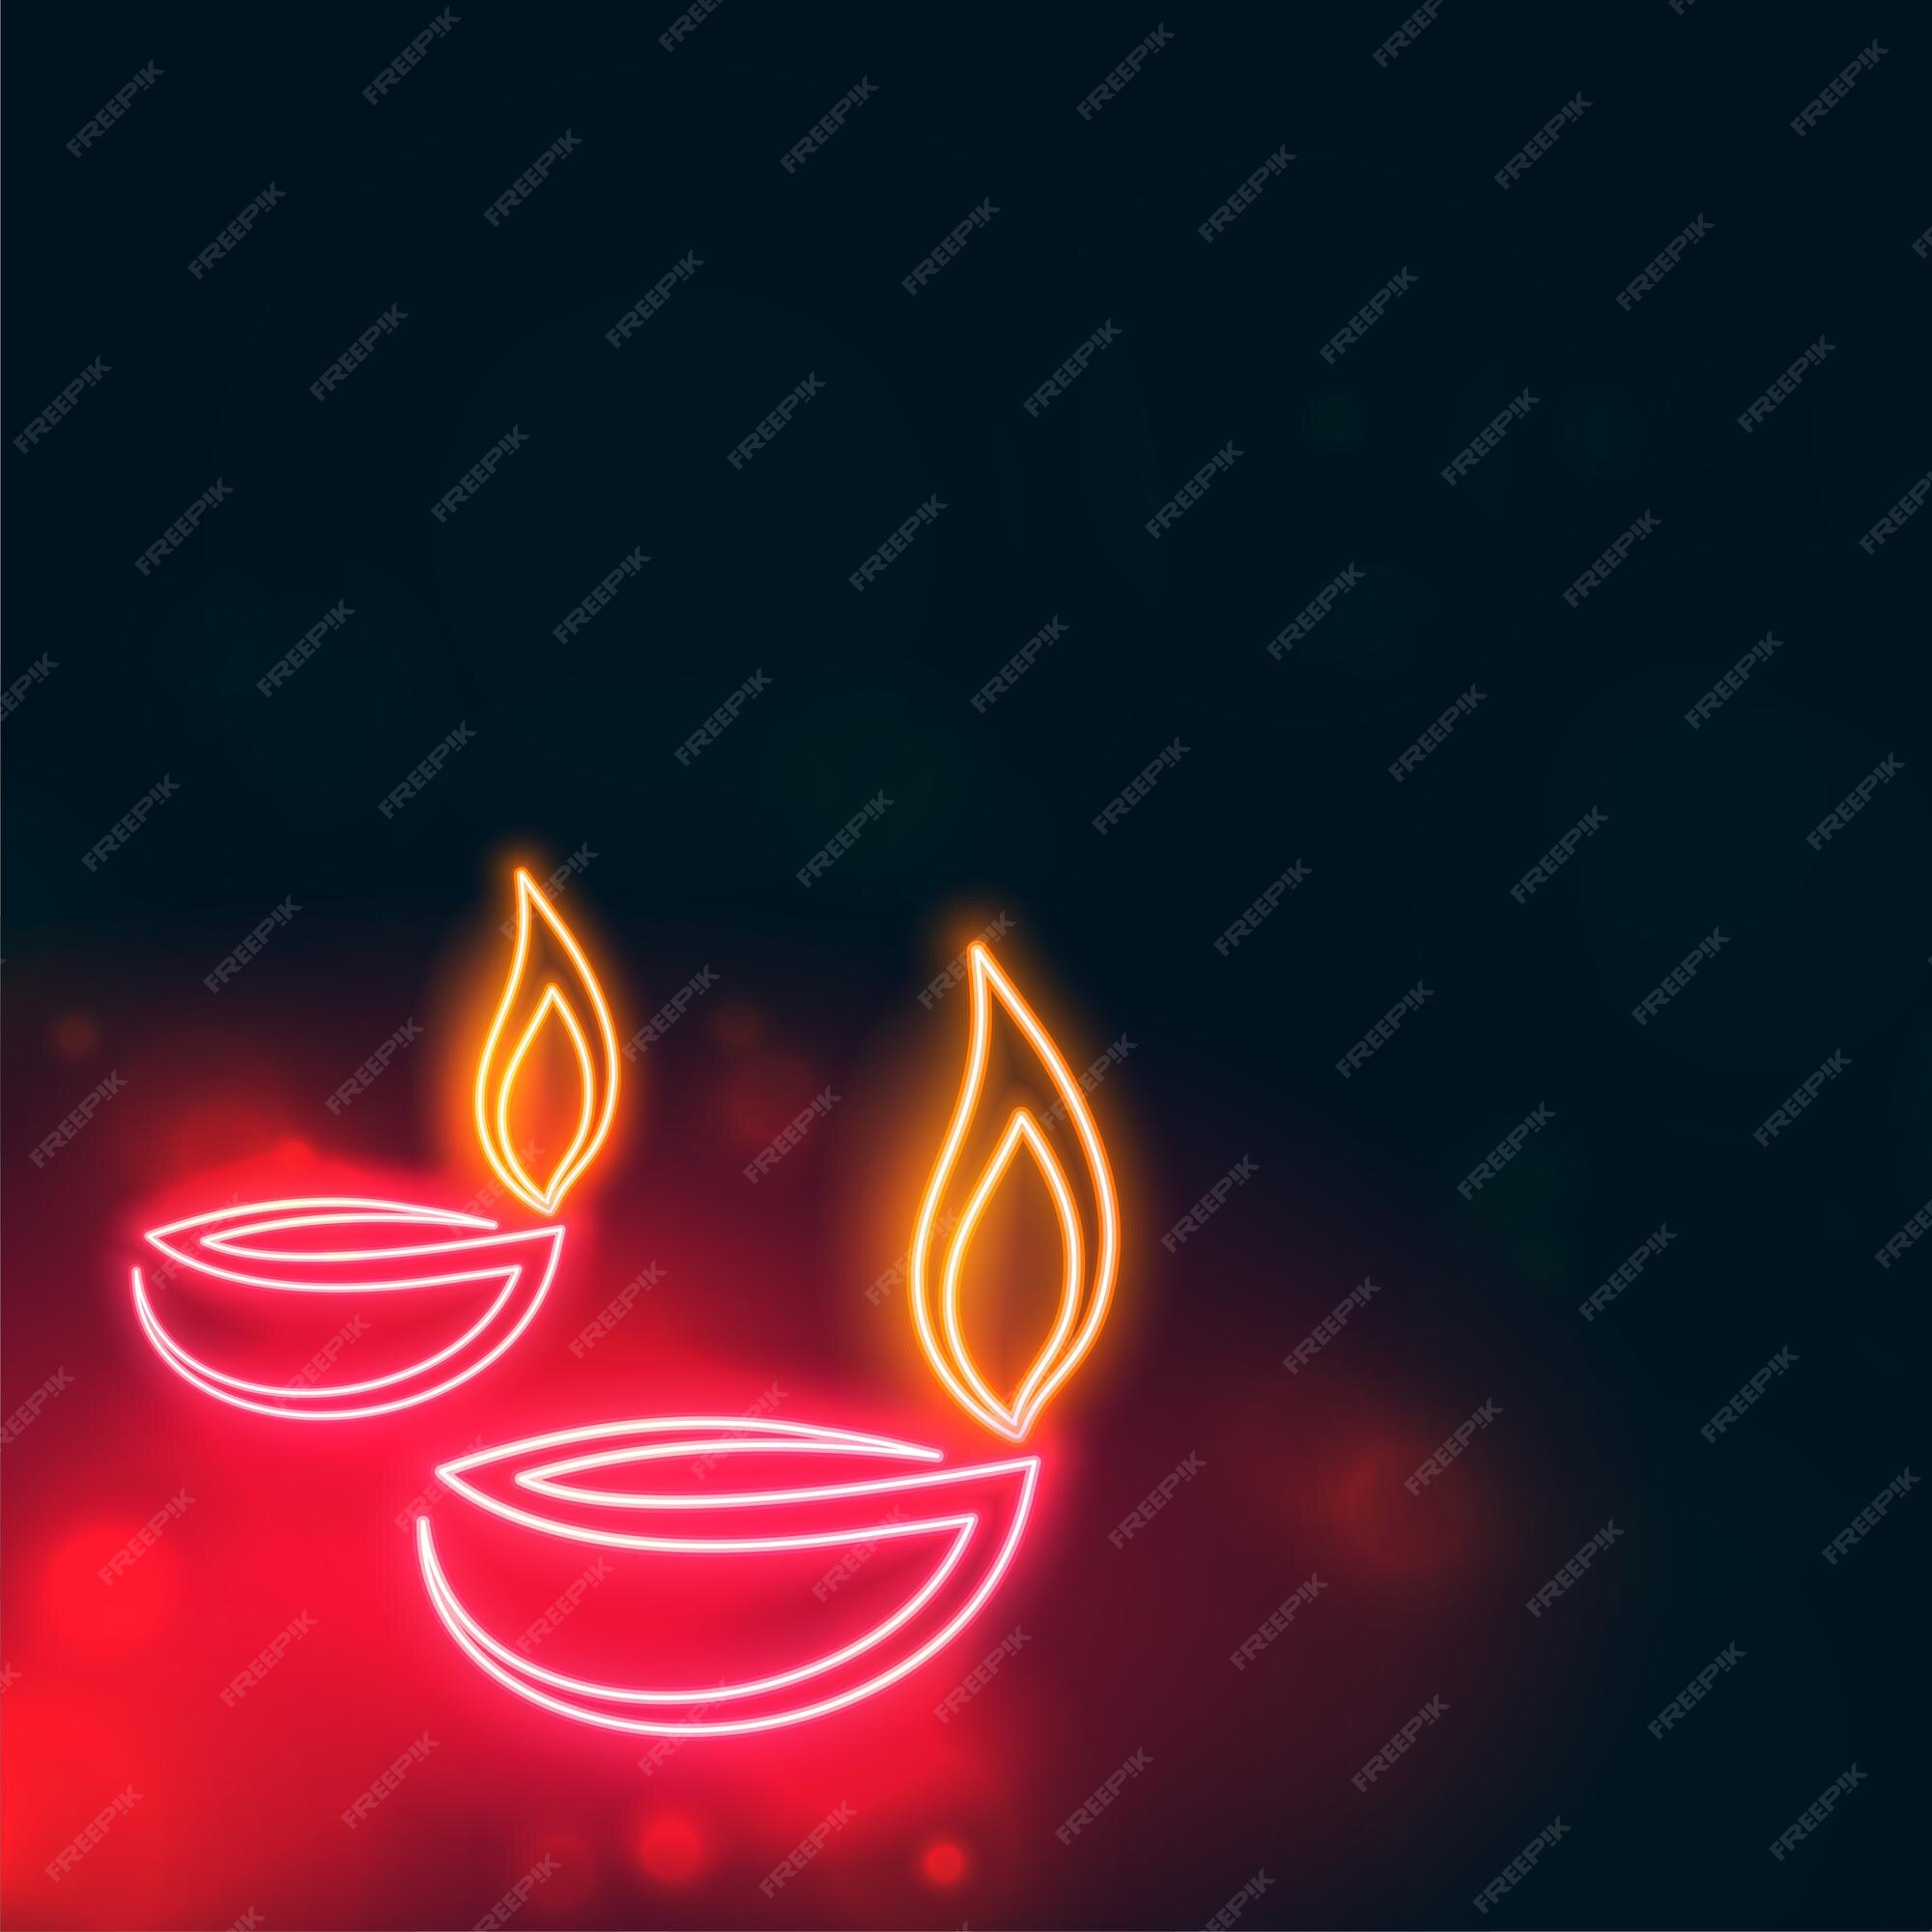 Diwali Diya Night Images - Free Download on Freepik